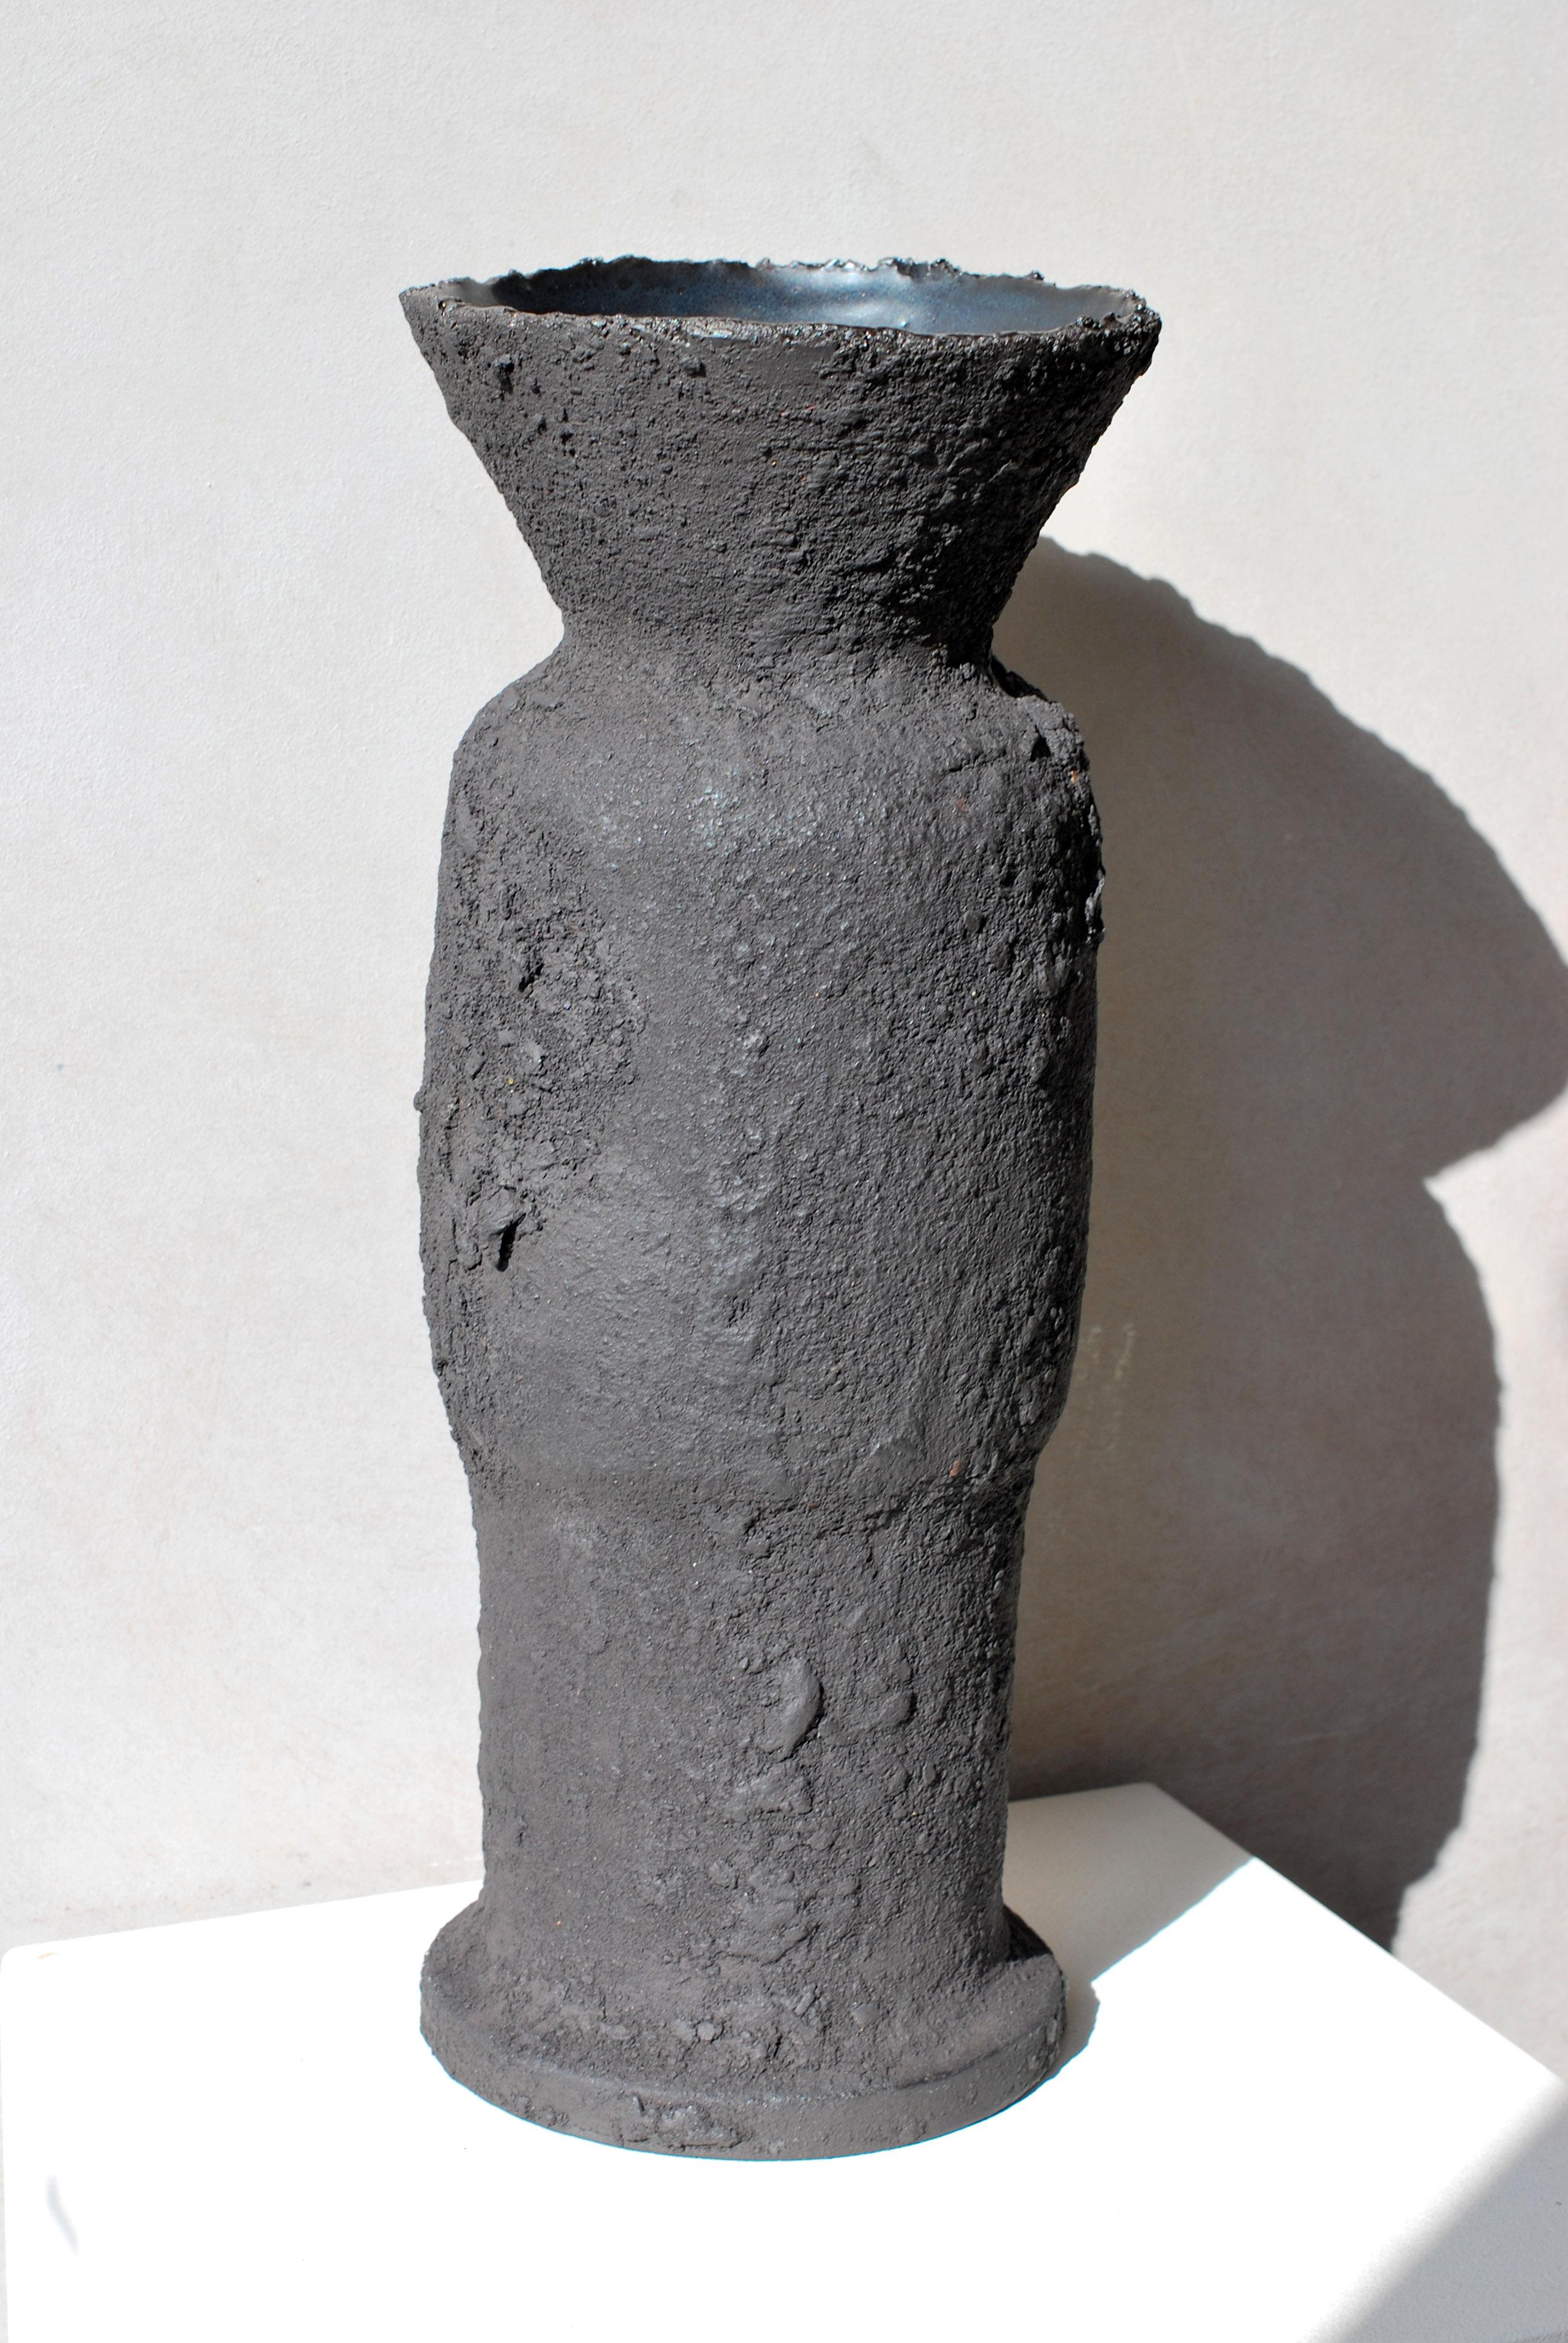 Vase en grès noir par Moïo Studio
Édition limitée
Dimensions : L 13 x D 13 x H 38,5 cm
MATERIAL : Émail noir mat, grès noir

Artistics est le studio d'art céramique basé à Berlin de l'artiste franco-palestinienne Maia Beyrouti. Il a été créé en